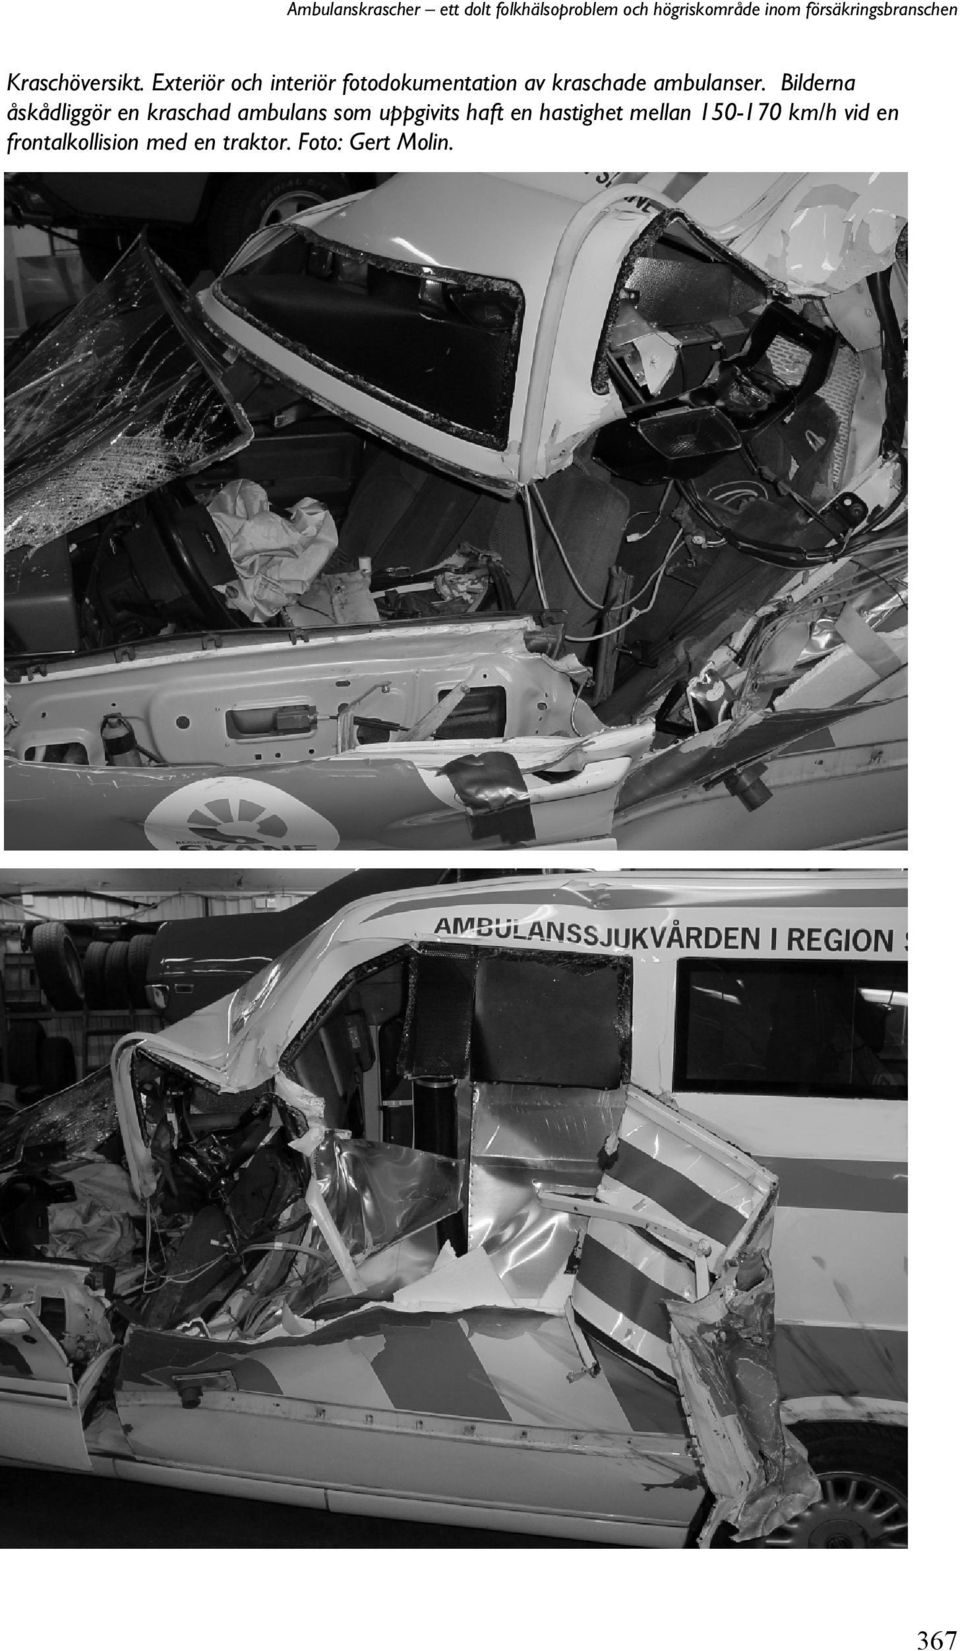 Exteriör och interiör fotodokumentation av kraschade ambulanser.